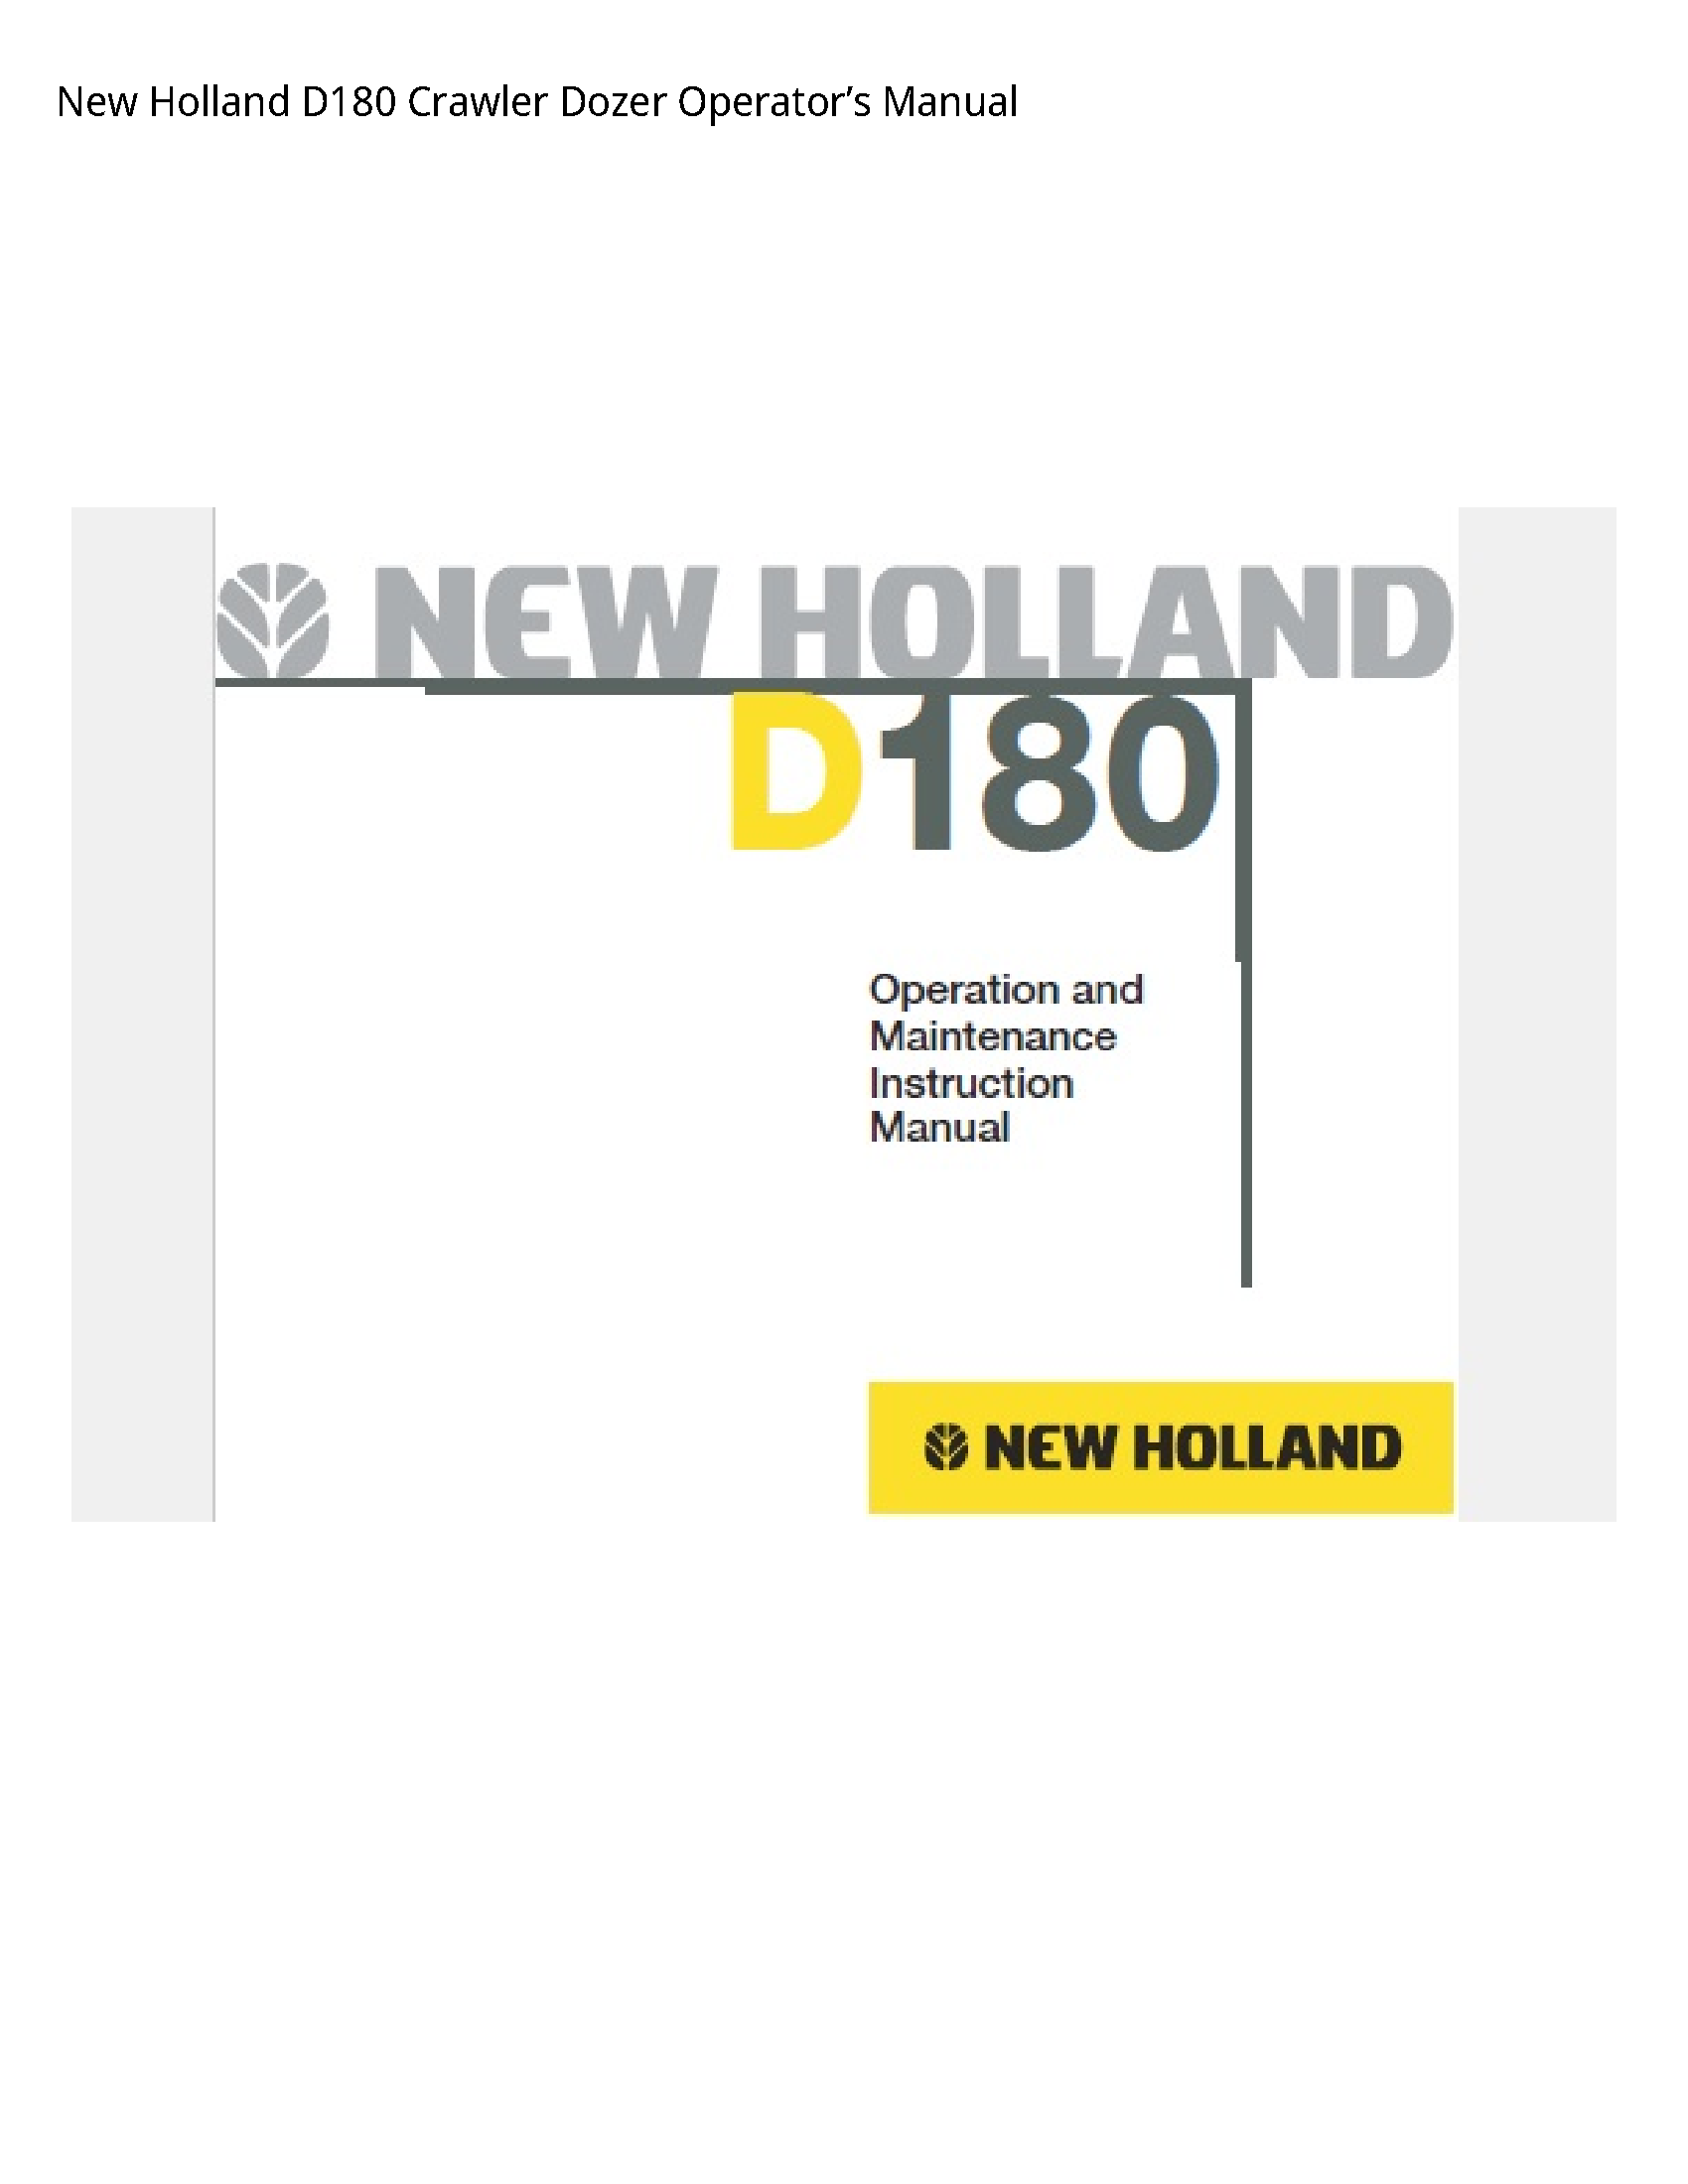 New Holland D180 Crawler Dozer Operator’s manual